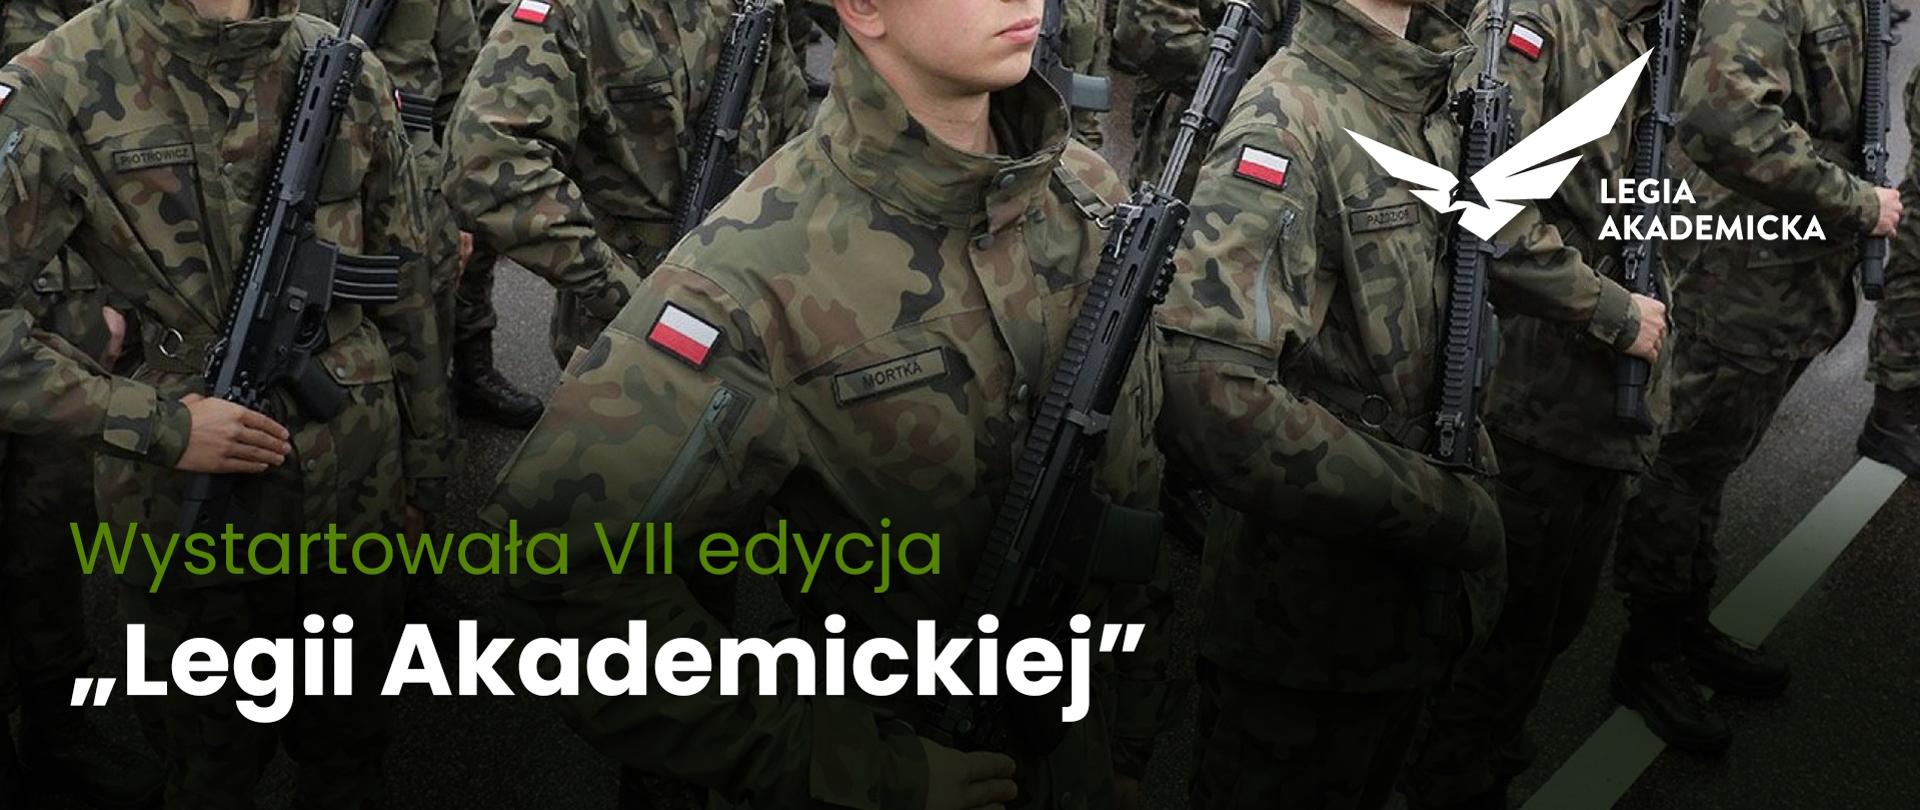 Na tle zdjęcia ludzi maszerujących w polskich mundurach napis Wystartowała VII edycja "Legii Akademickiej".